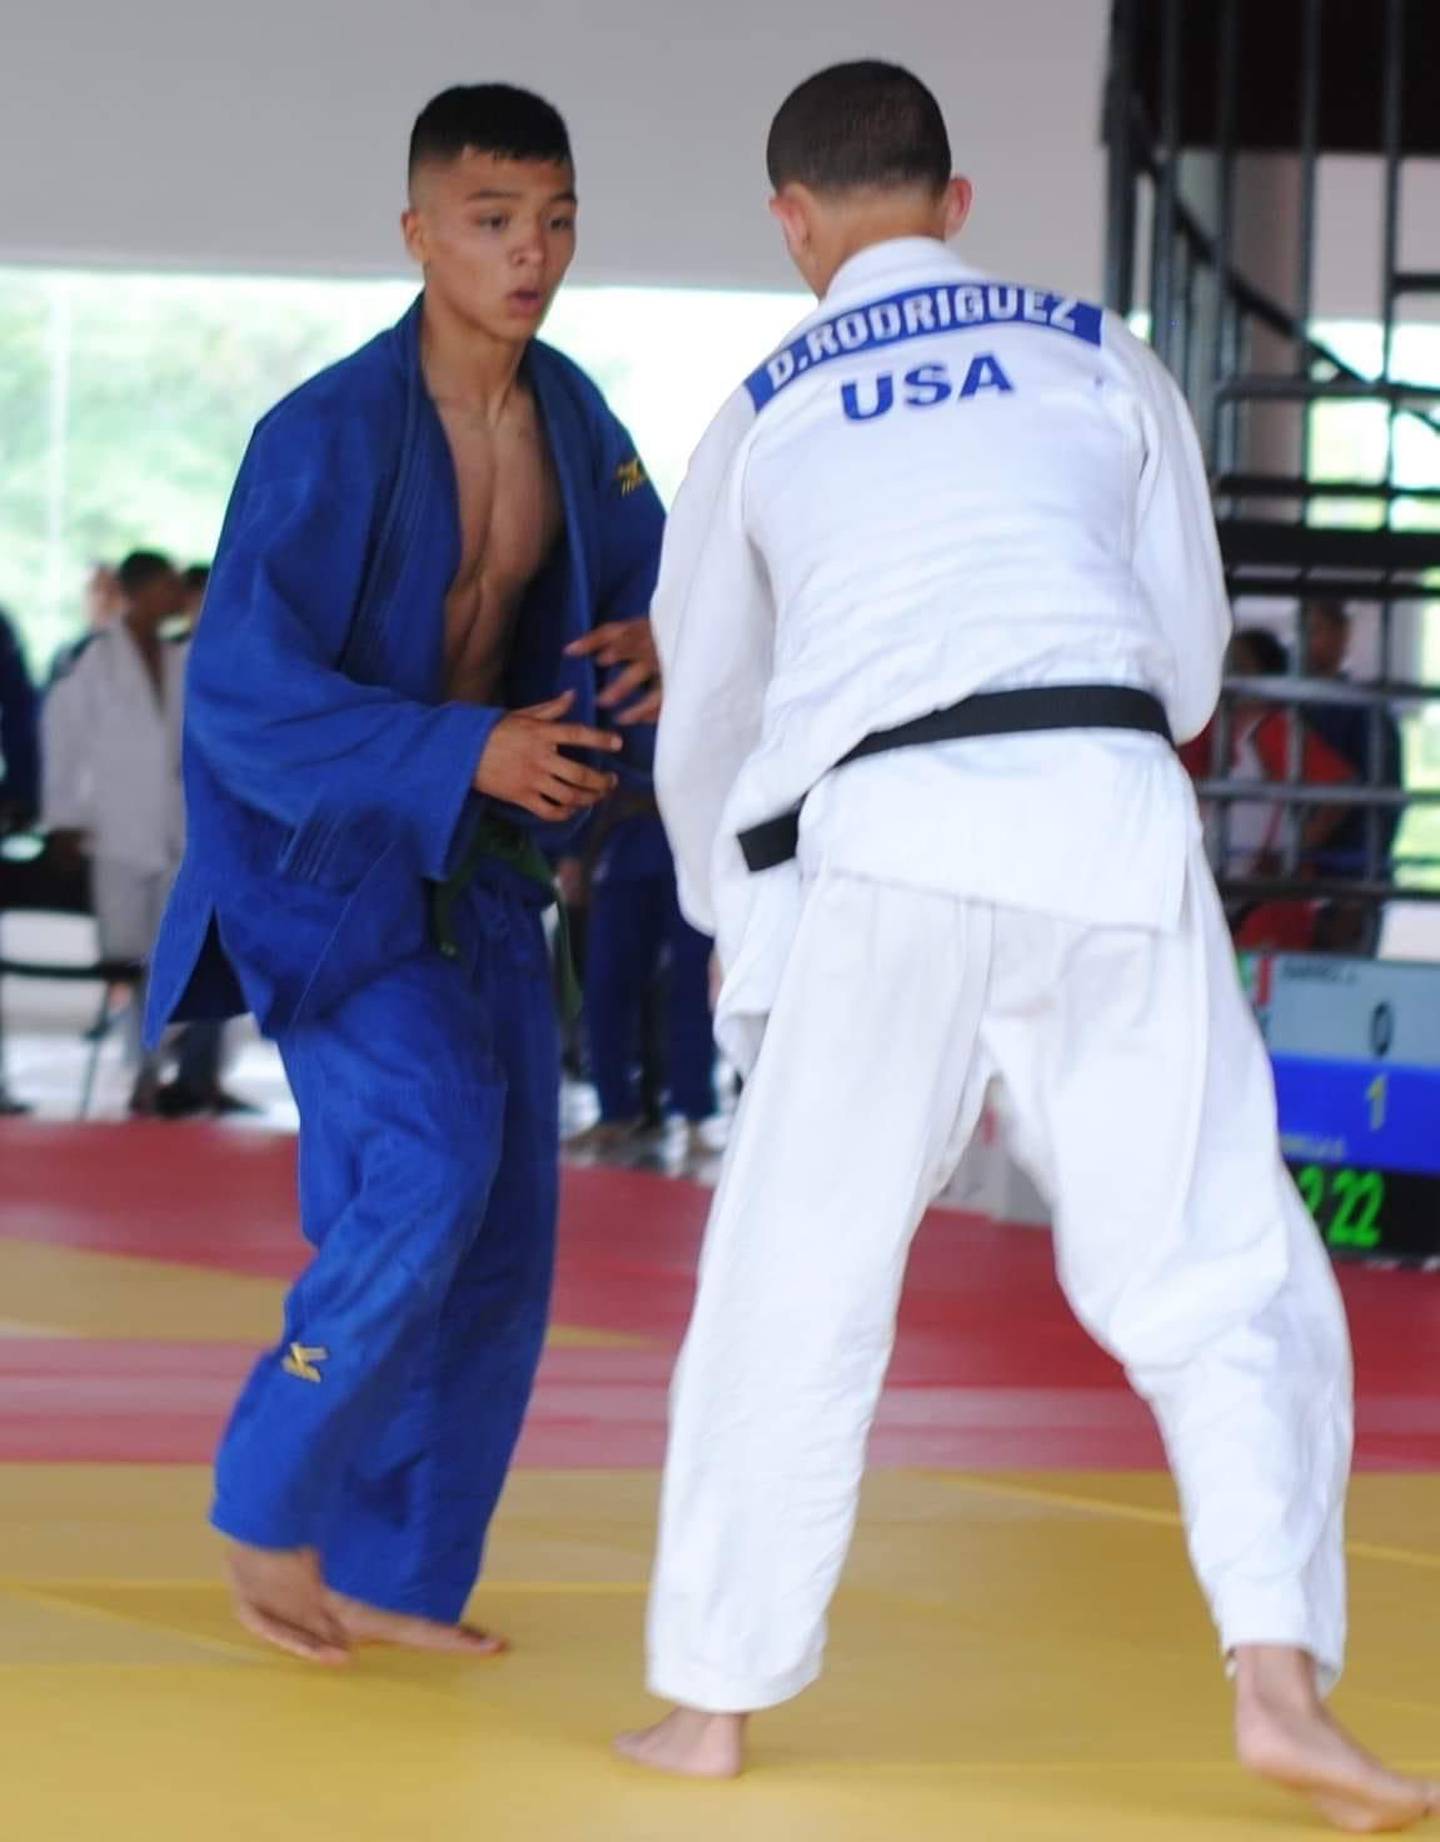 David Domínguez es un judoca que representará al país en Brasil